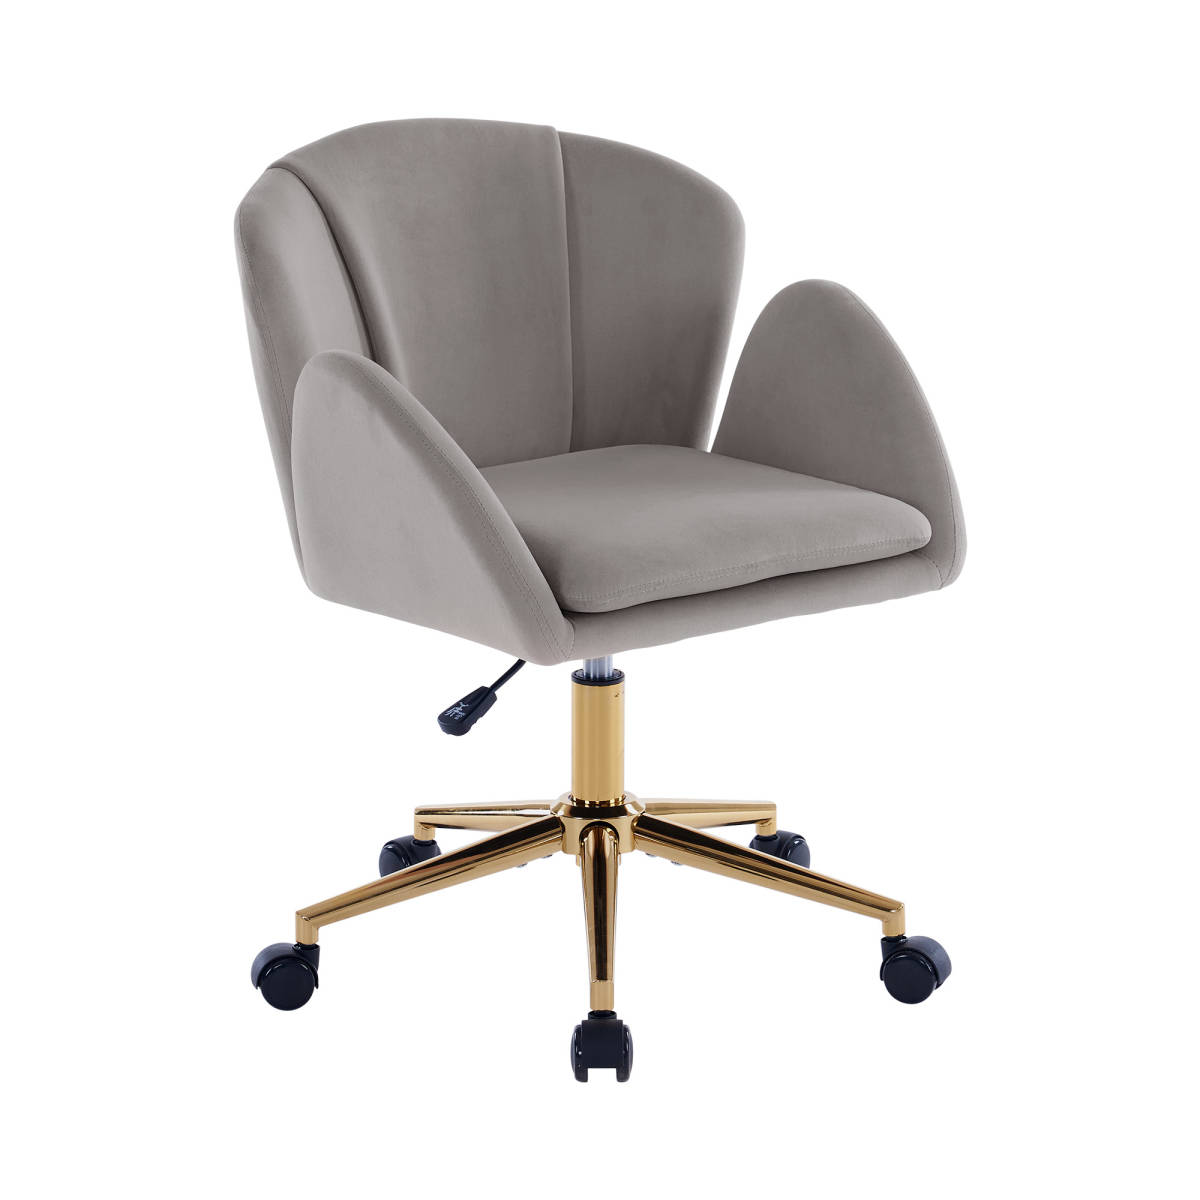 ライトグレーデスクチェア 在宅ワーク チェア 椅子 いす疲れにくい オフィス オトナかわいい シンプル 回転昇降肘あり背もたれあり